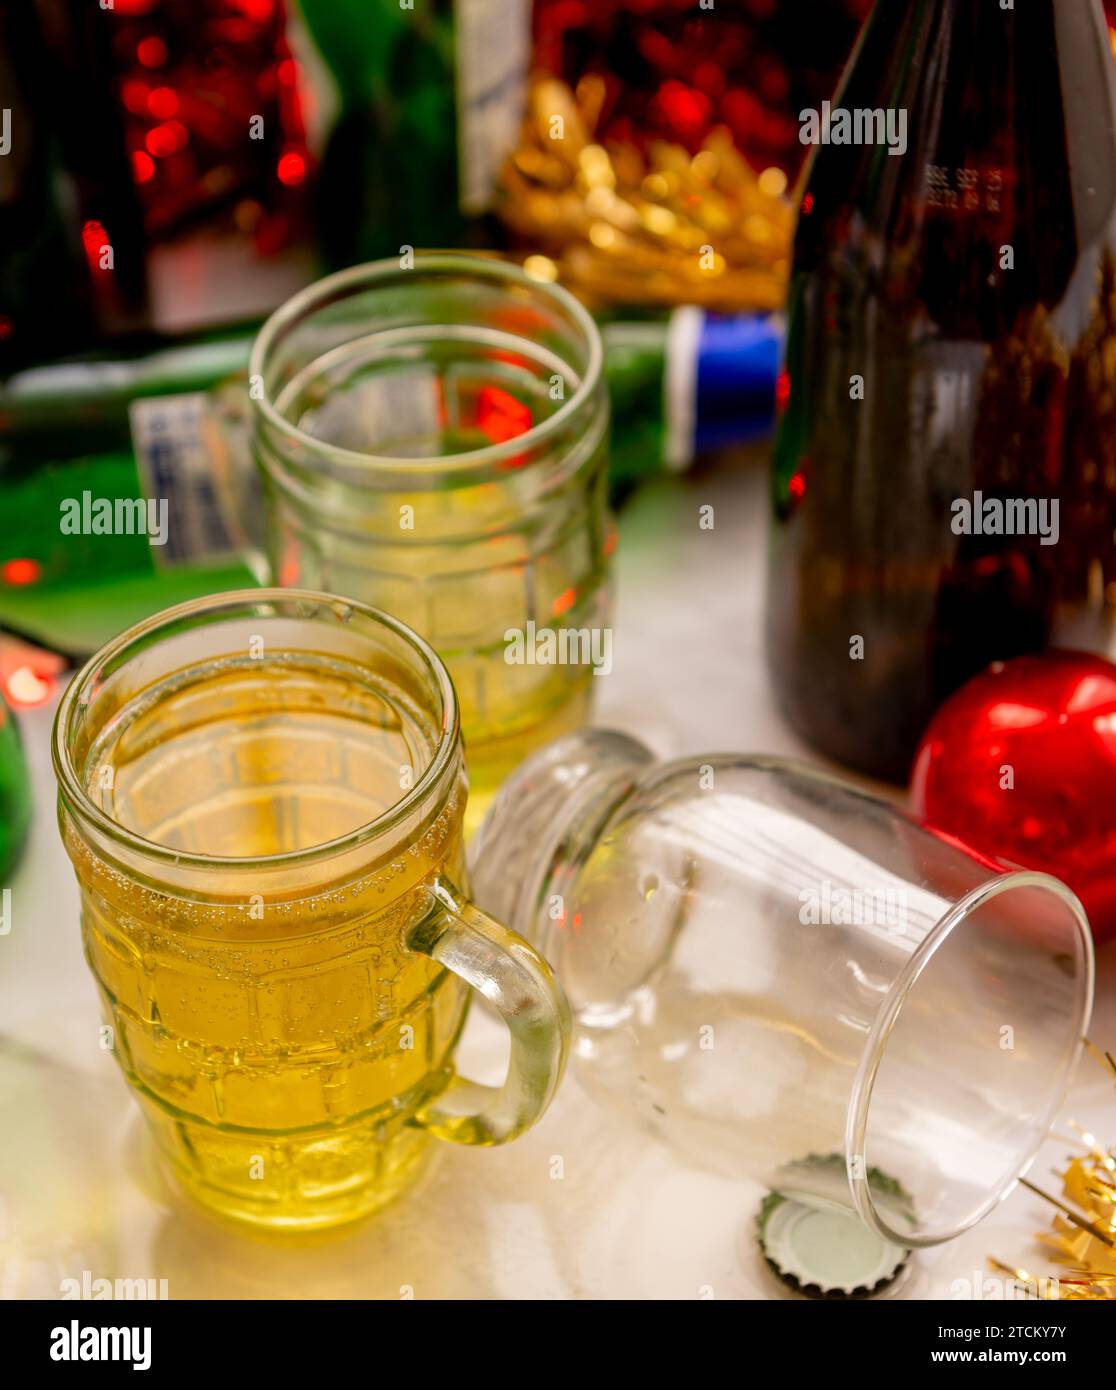 Un concepto festivo de celebración navideña con vasos y botellas de bebidas alcohólicas y decoraciones en una mesa. Foto de stock